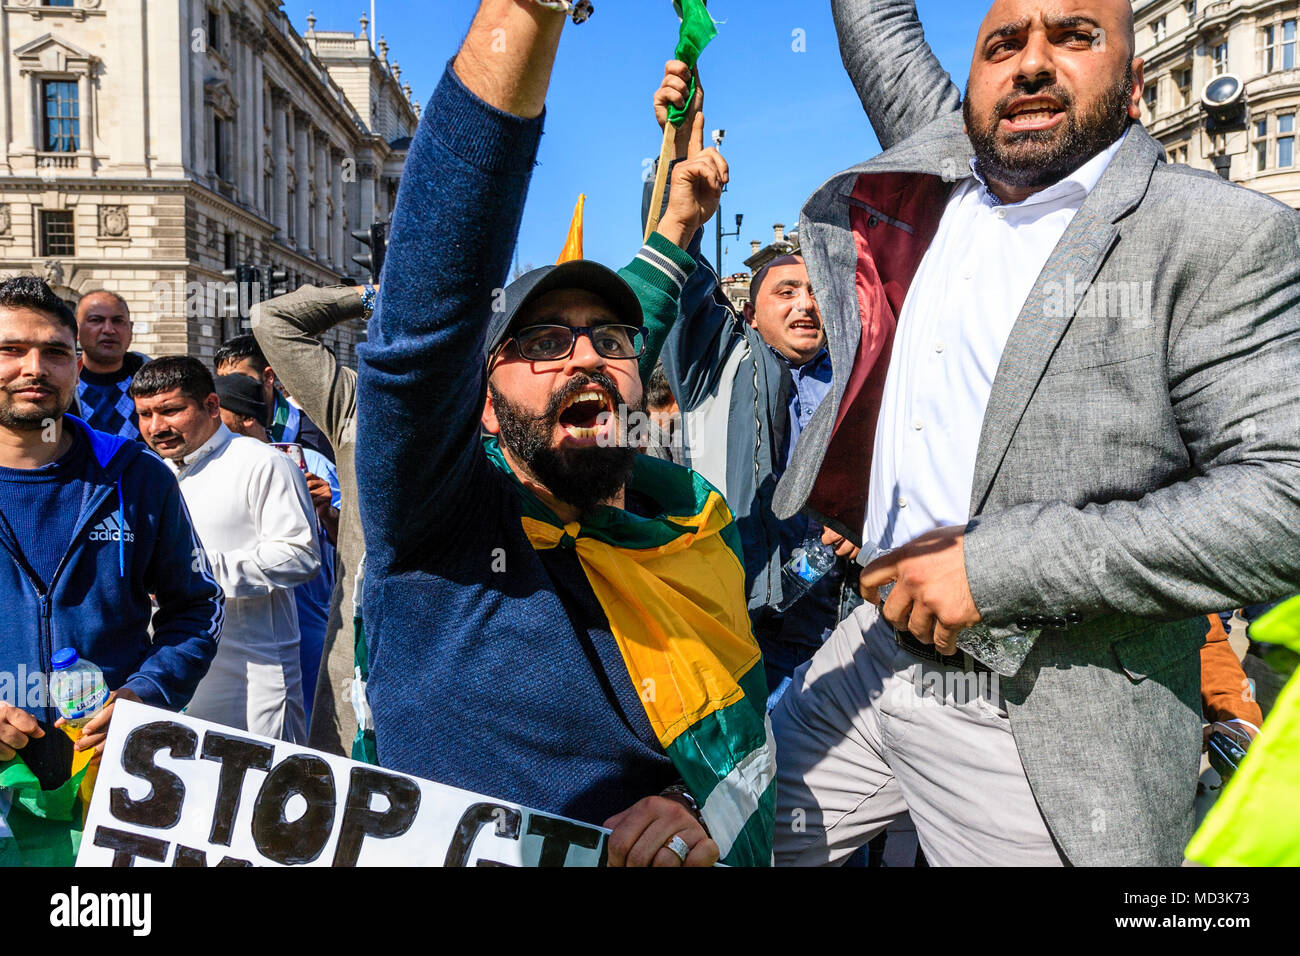 Londres, Royaume-Uni. 18 avril 2018. Les manifestants pakistanais pro face à un groupe de personnes Baloutches qui manifestent contre les violations des droits de l'homme, la place du Parlement, Londres, Royaume-Uni. Credit : Grant Rooney/Alamy Live News Banque D'Images